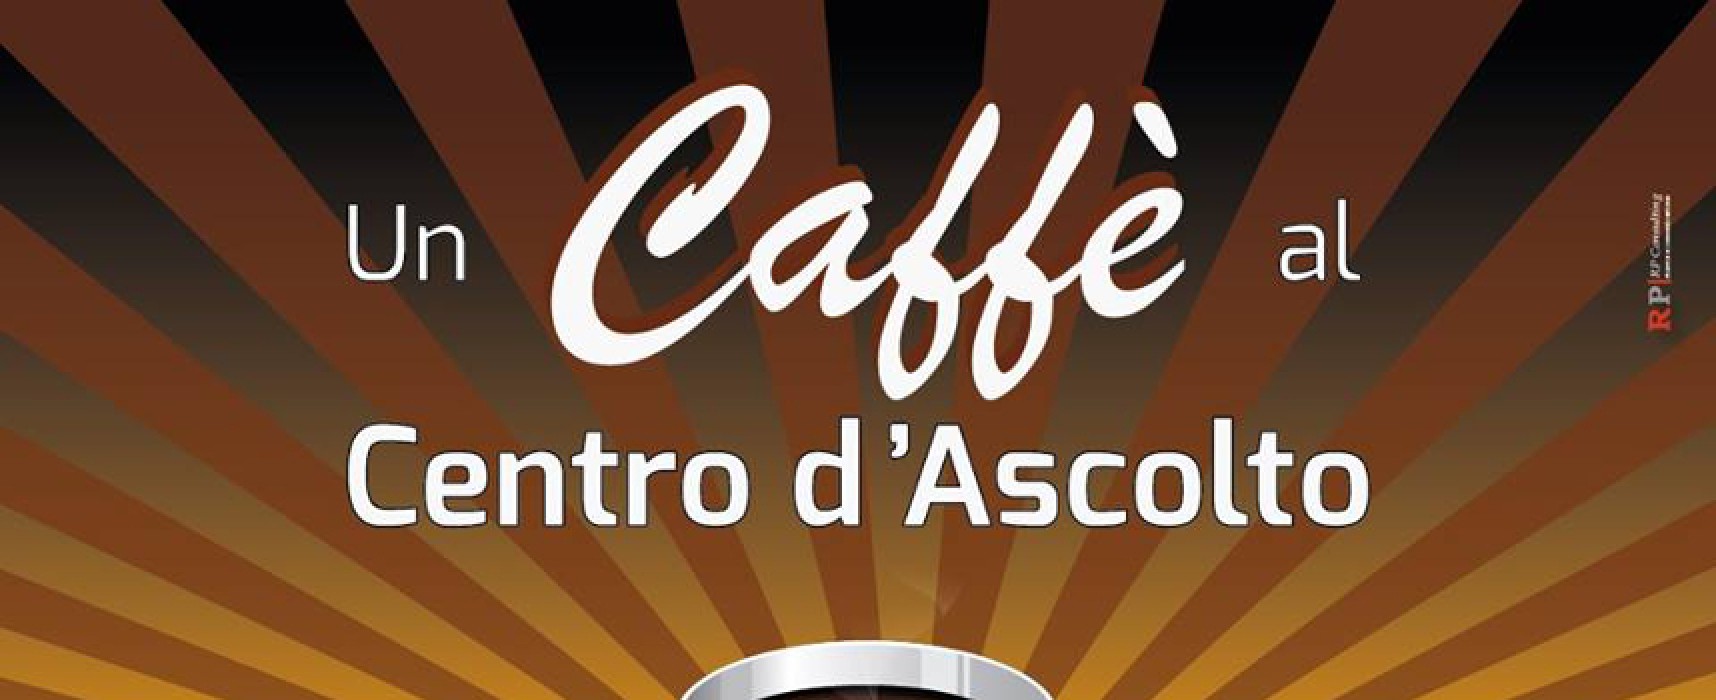 “Un caffè al centro d’ascolto”, Enrico Macioci presenta il libro “Breve storia del talento”